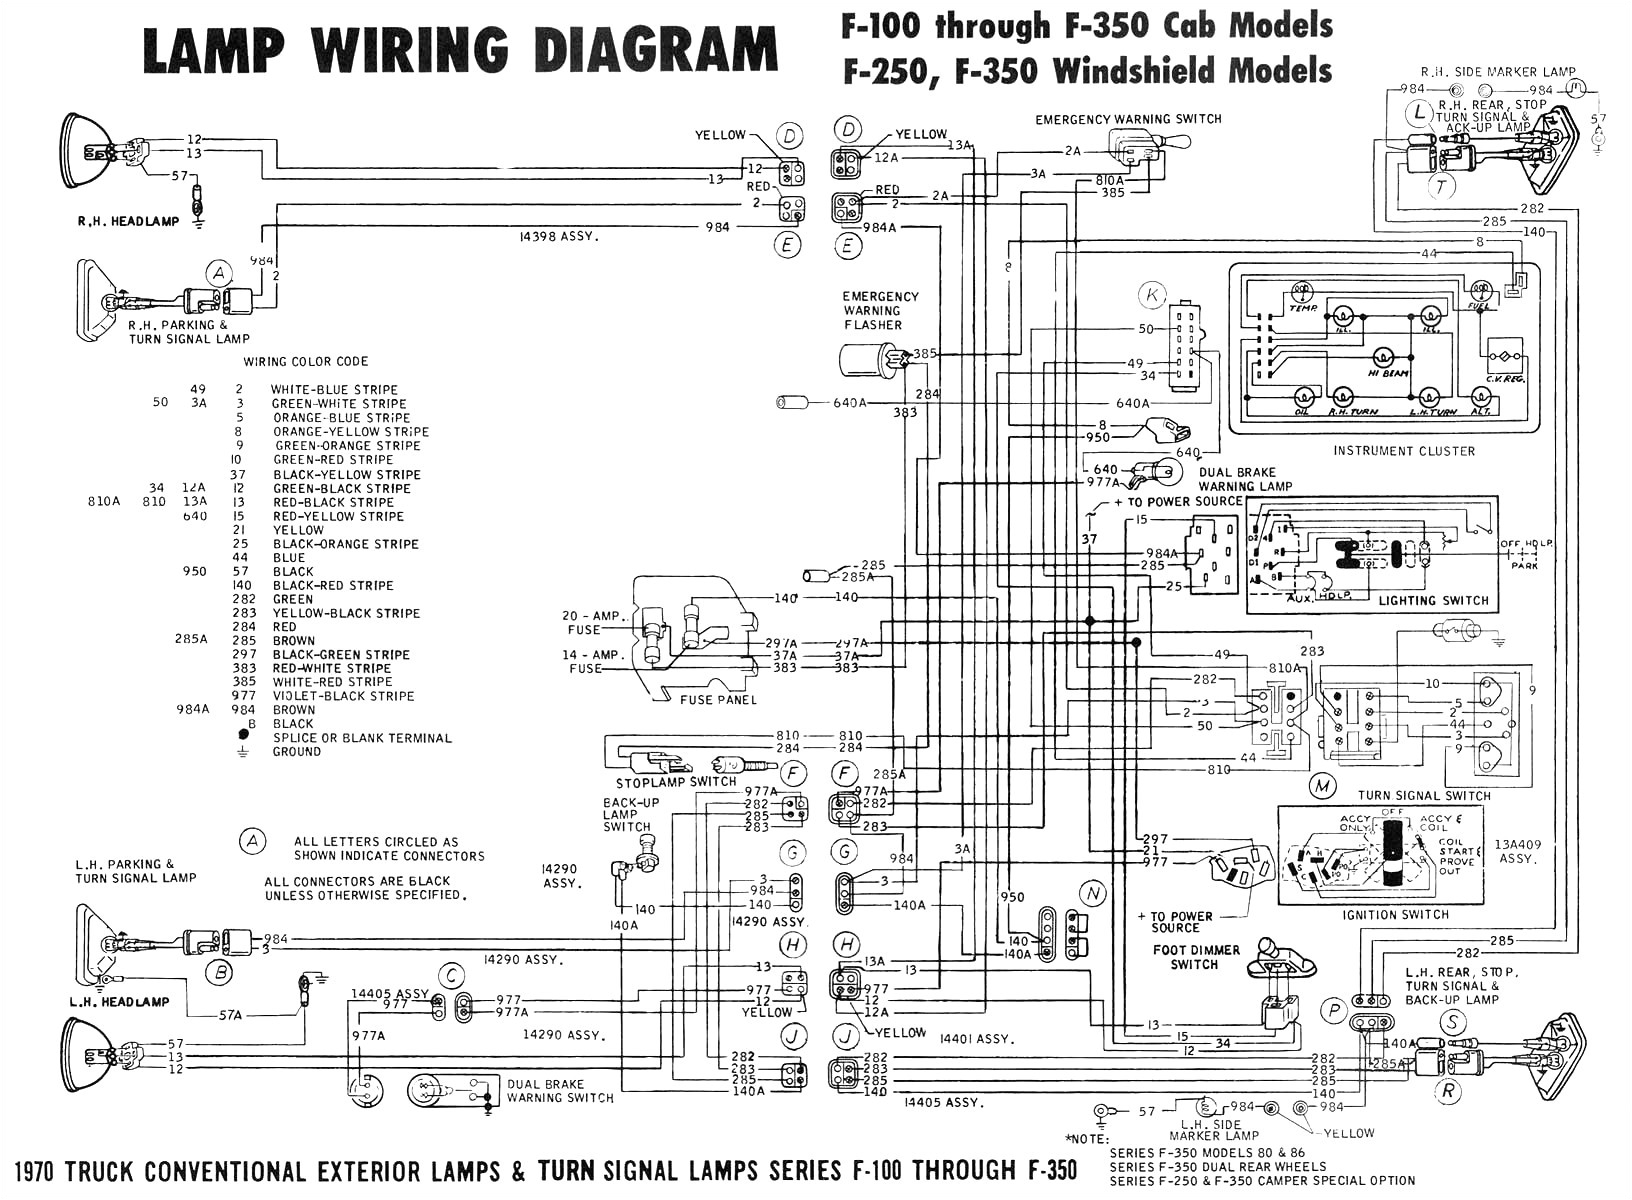 lgb 12070 wiring diagram schema diagram database lgb train wiring diagrams